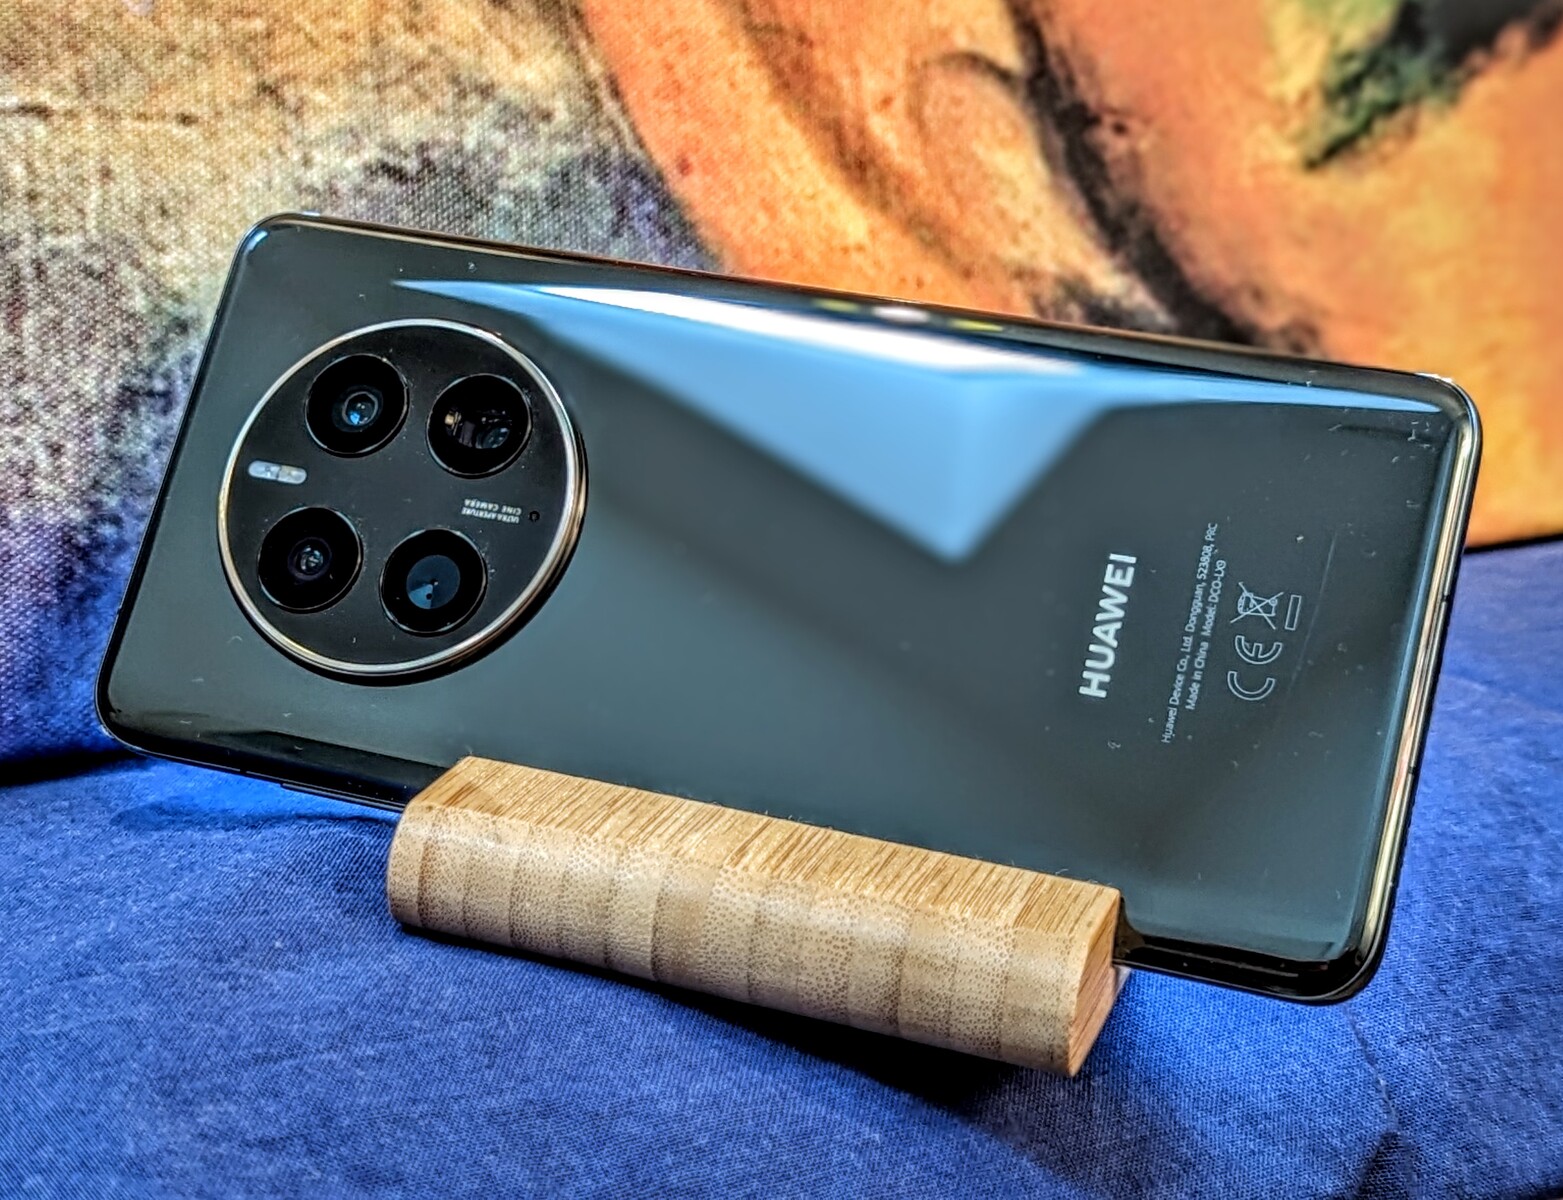 rijk Beschaven Uittrekken Huawei Mate 50 Pro smartphone review: The camera star has problems -  NotebookCheck.net Reviews